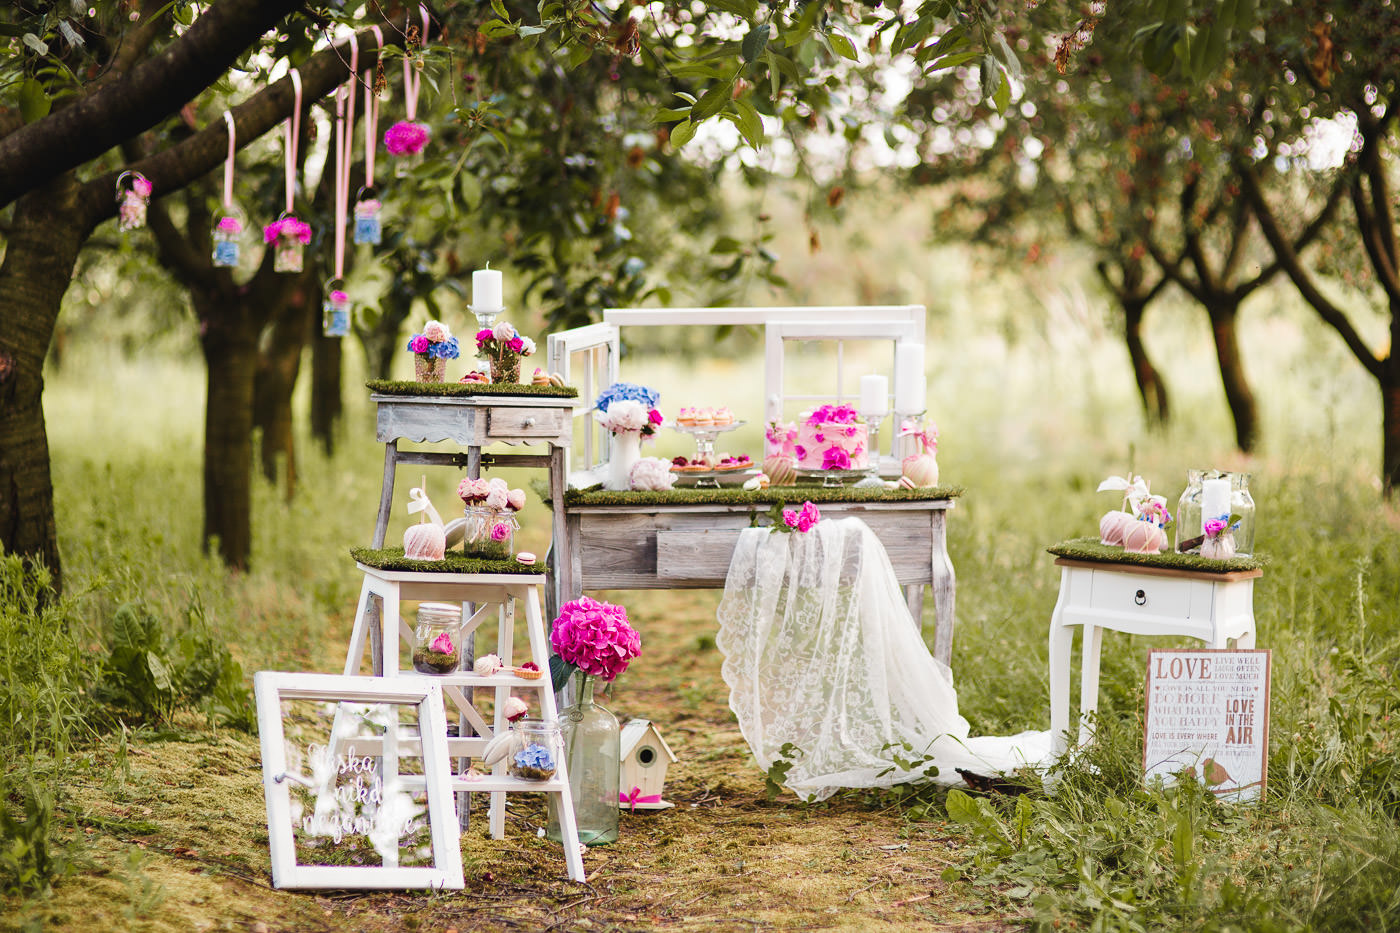 Susan&Sis decor - svadobná výzdoba a dekorácie svadieb a eventov